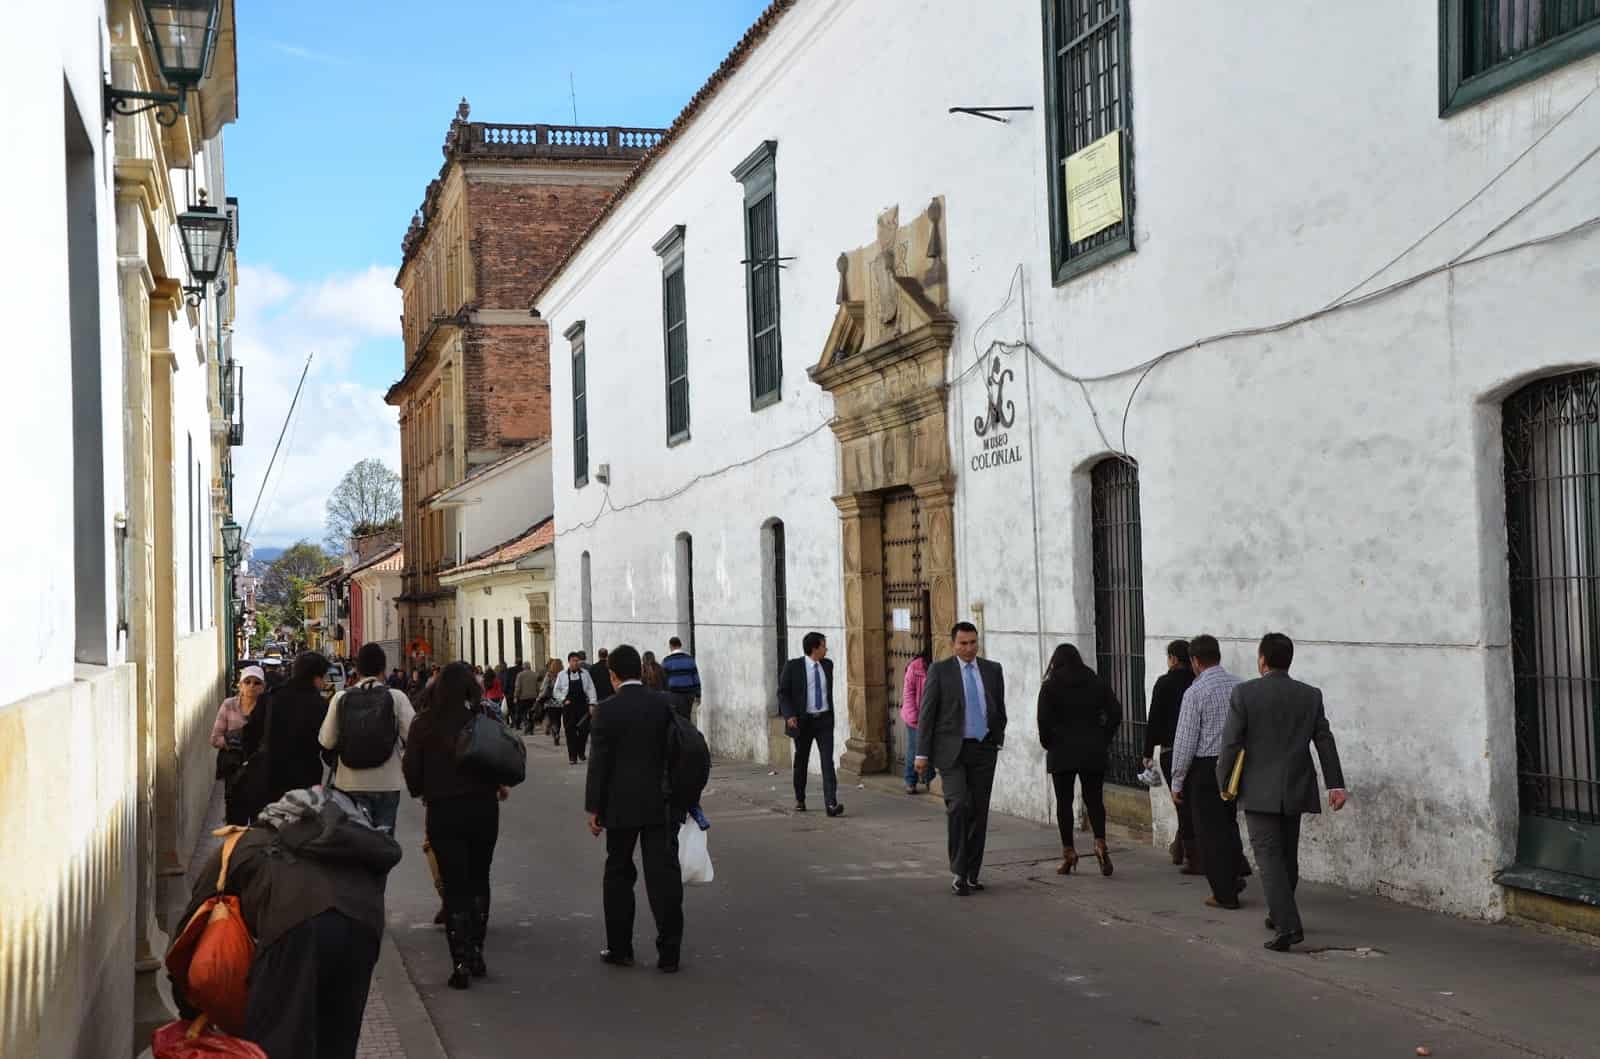 Colonial Museum in La Candelaria, Bogotá, Colombia